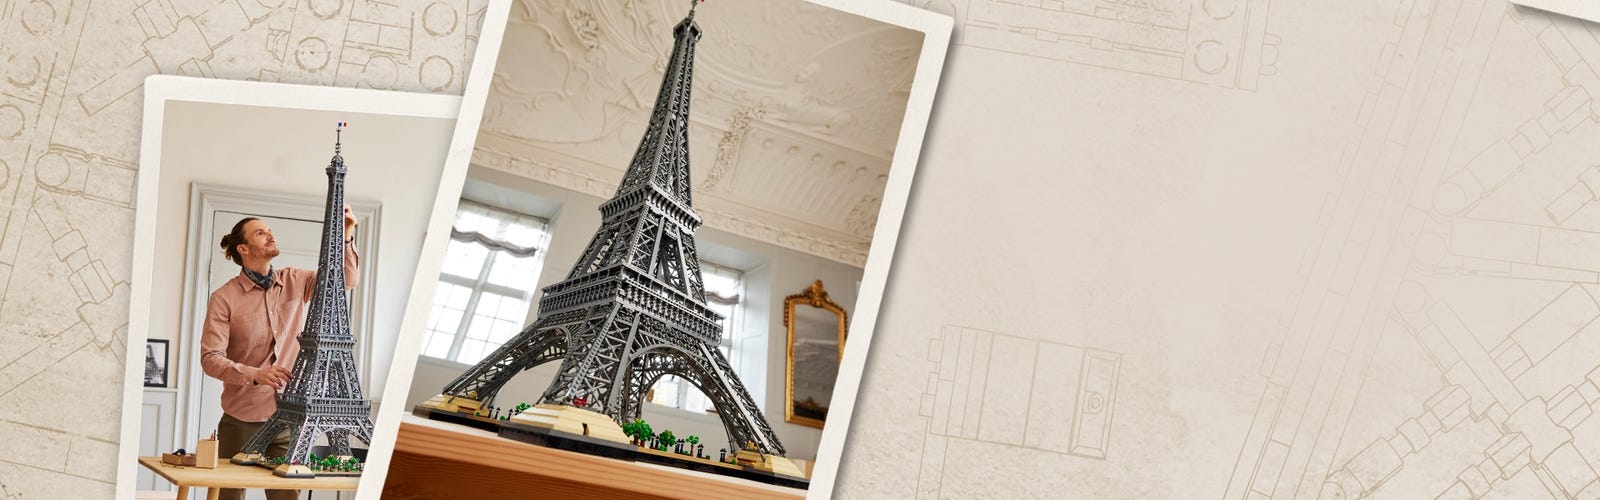 LEGO 10307 La Tour Eiffel s'inspire de plusieurs époques